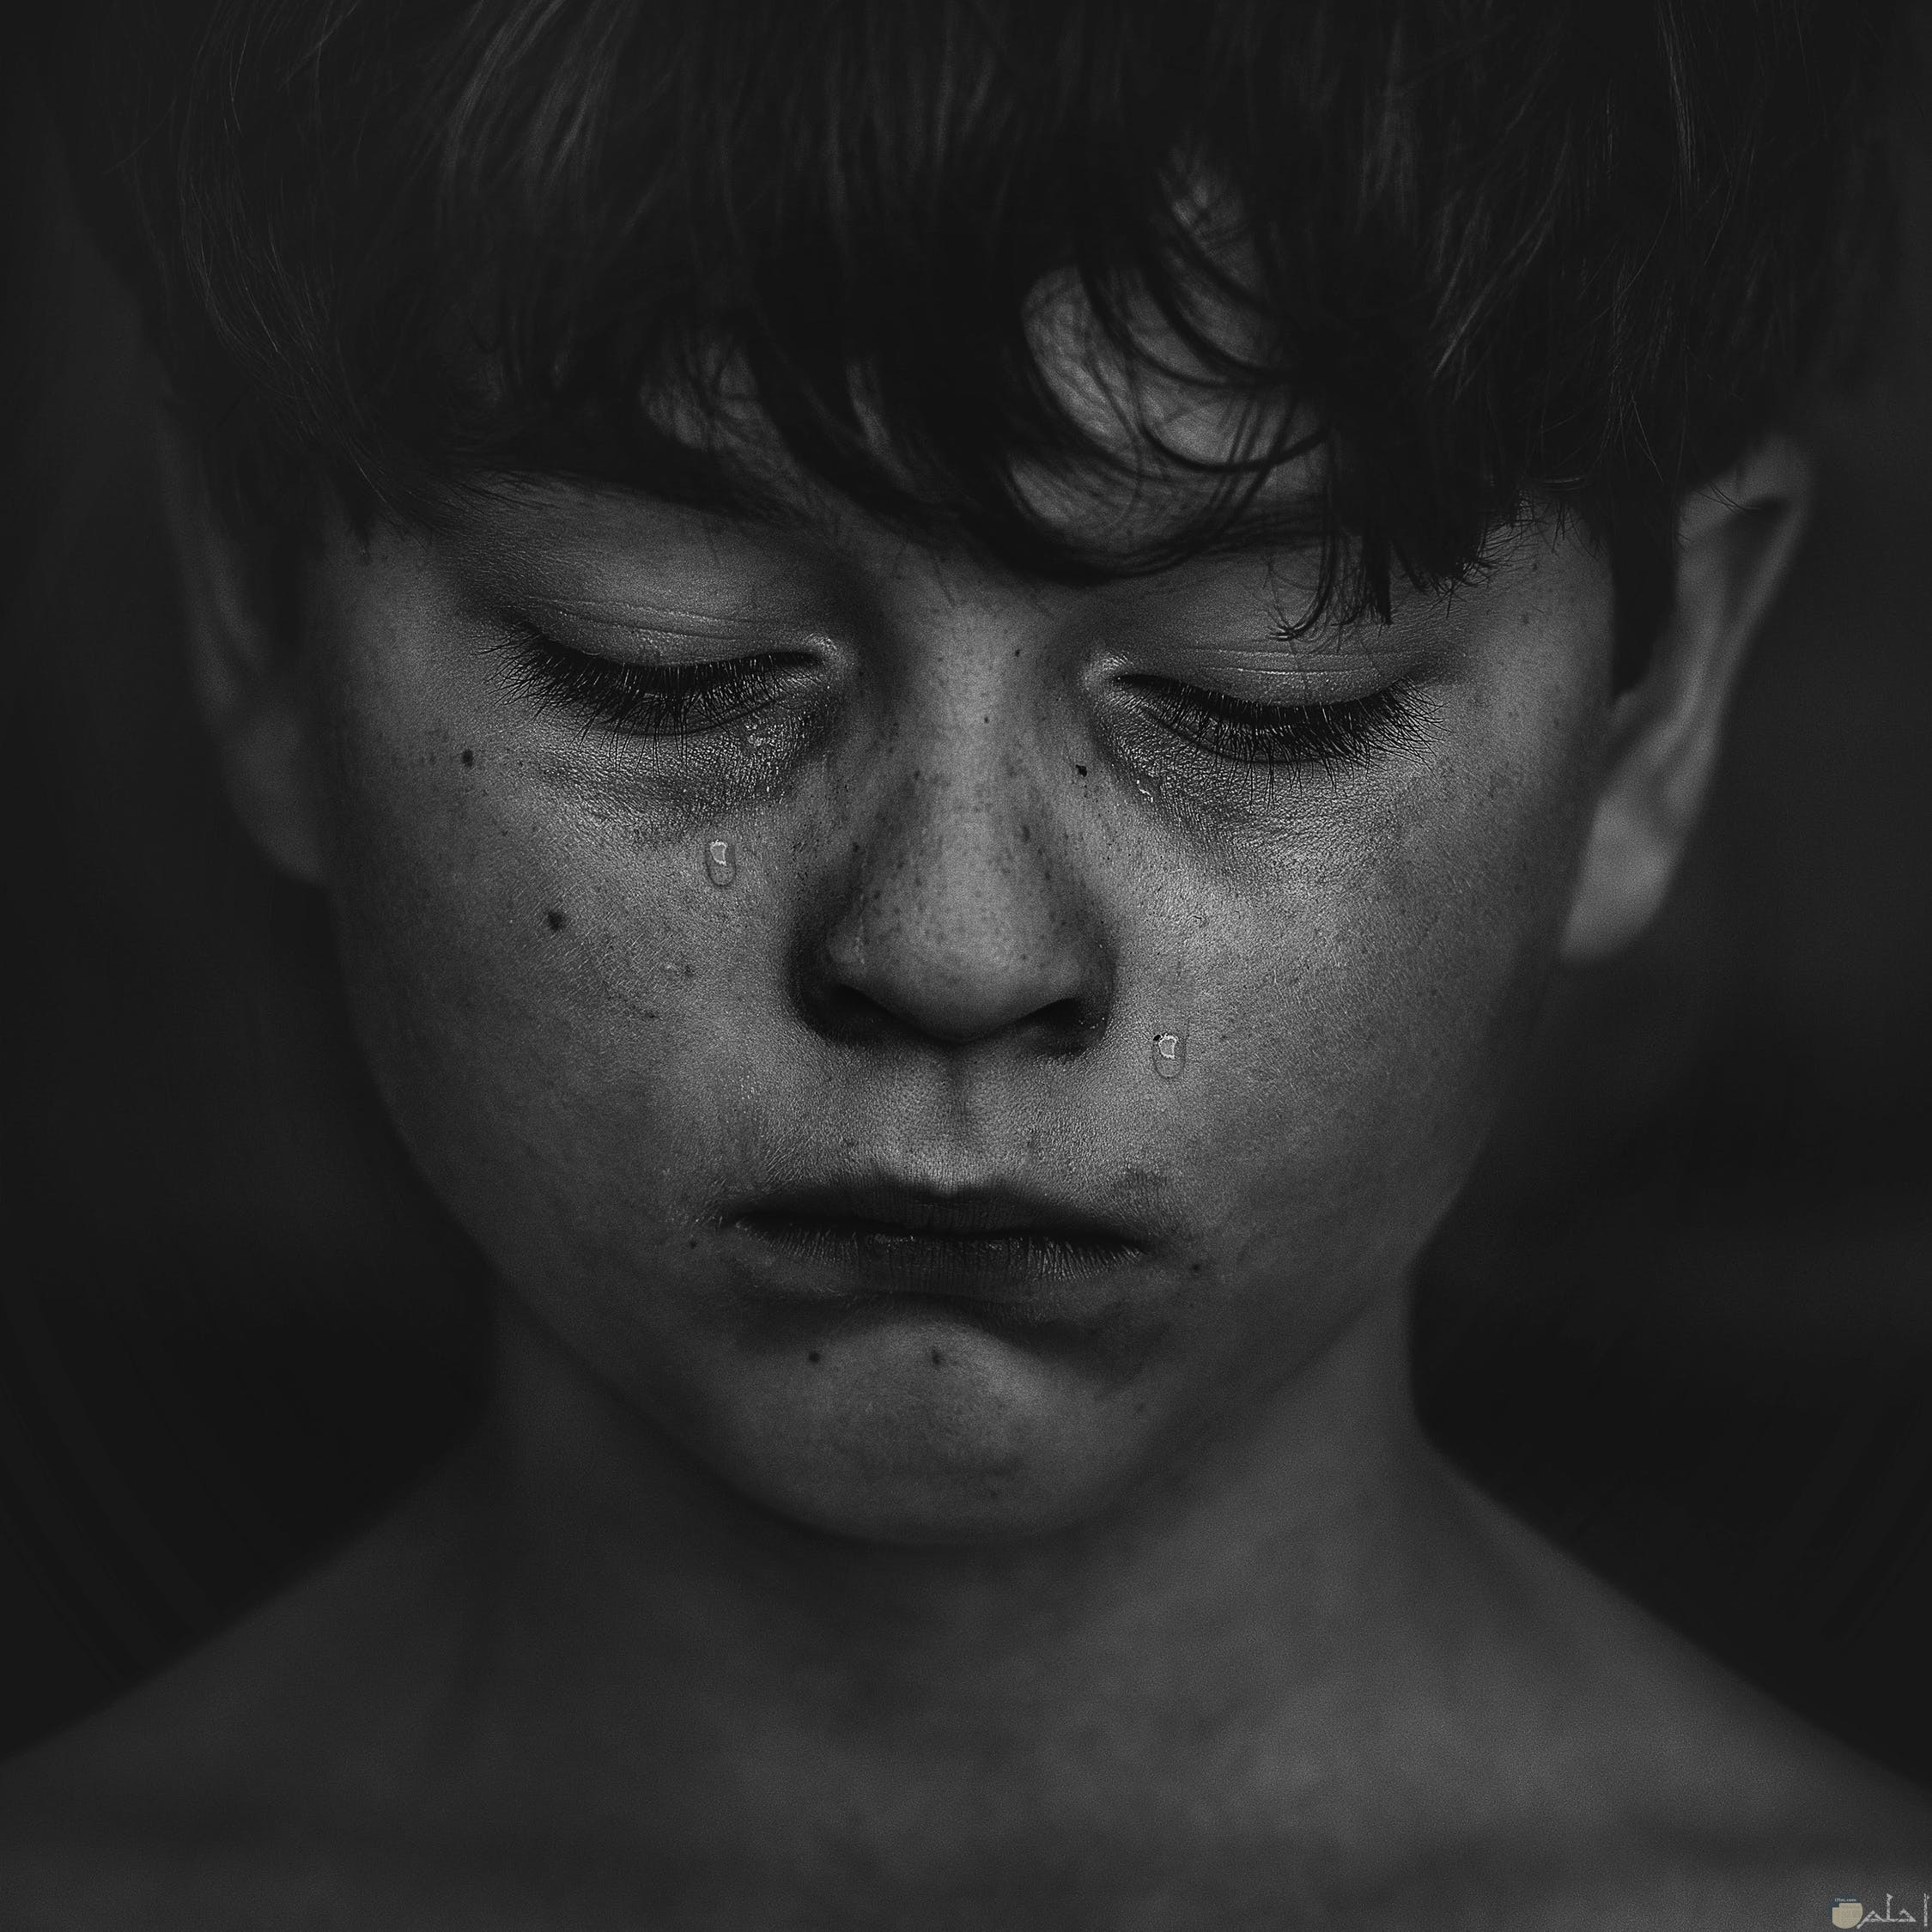 صور حزينة للتصميم أجمل 10 صور بكاء وندم مؤثرة